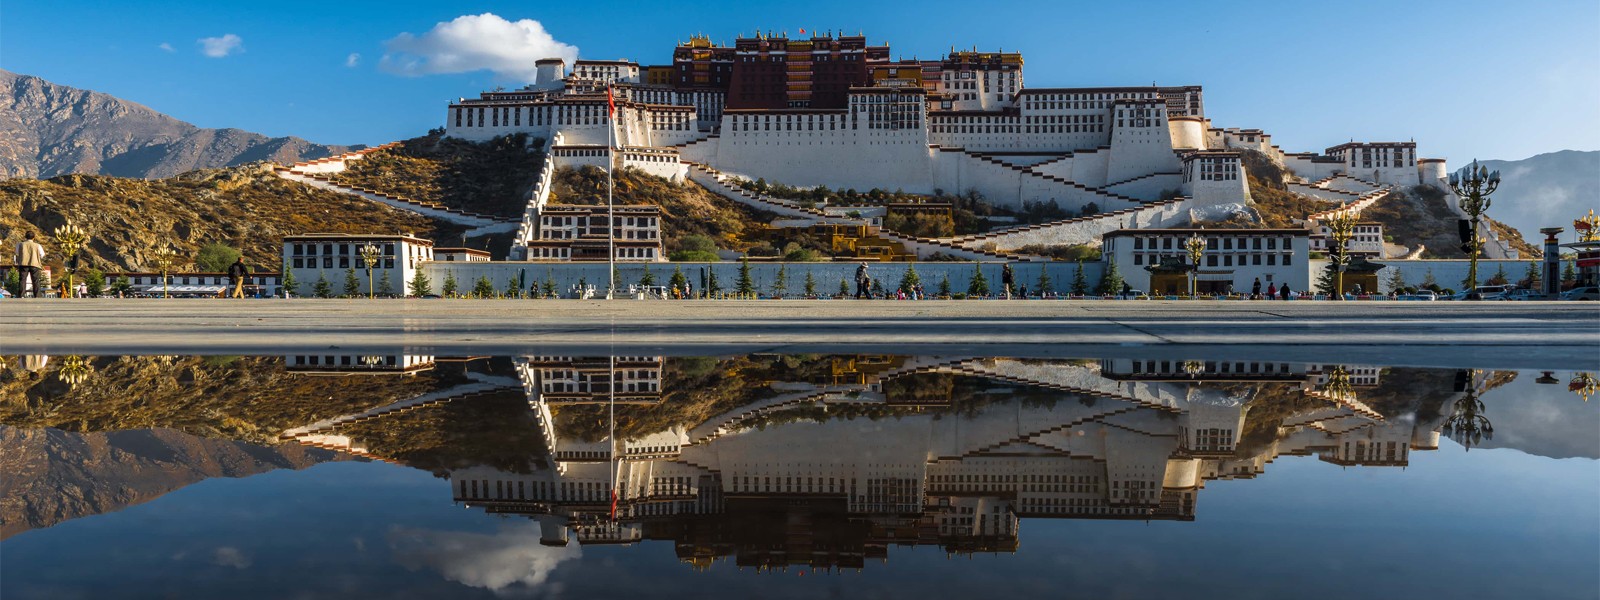 Lhasa - Kathmandu Overland Tour